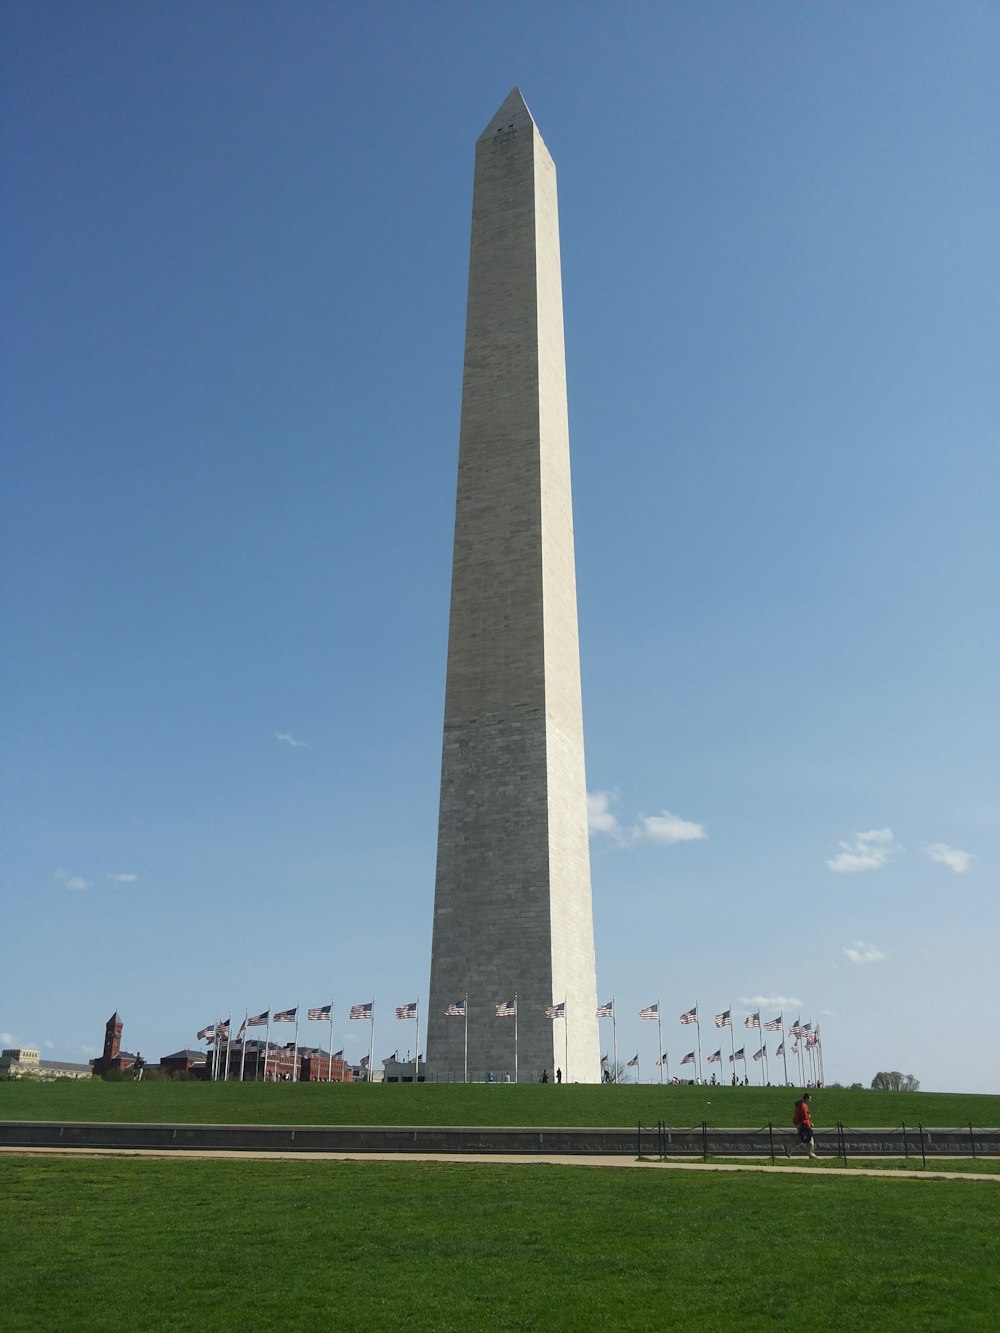 배경에 워싱턴 기념비가 있는 전면에 깃발이 있는 키가 큰 기념물